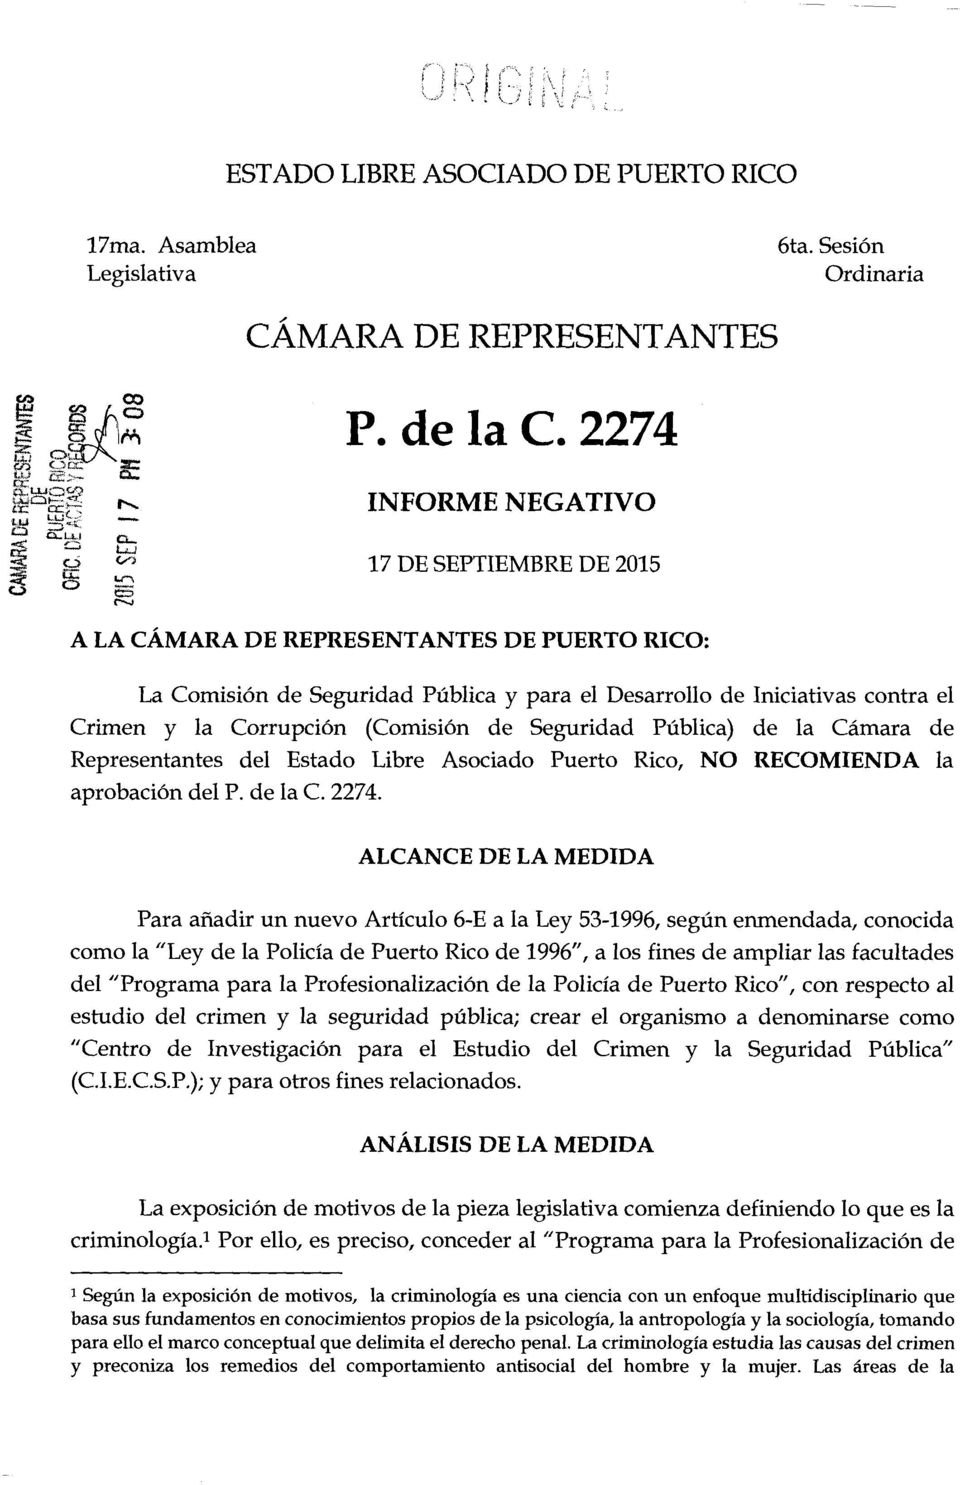 (Comisi6n de Seguridad Publica) de la Camara de Representantes del Estado Libre Asociado Puerto Rico, NO RECOMIENDA la aprobaci6n del P. de la C. 2274.